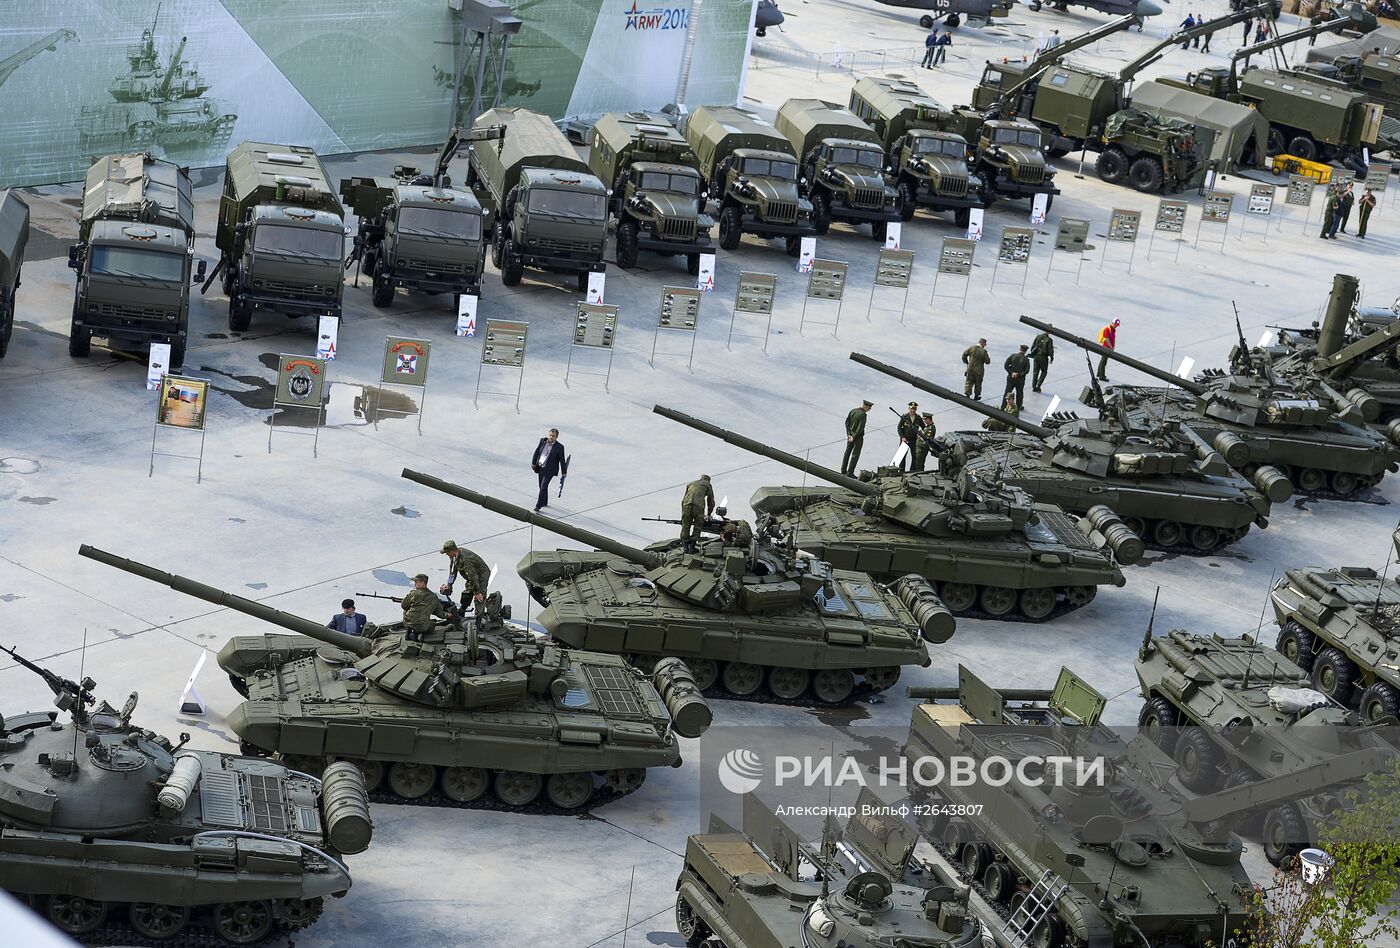 Открытие Международного военно-технического форума "АРМИЯ-2015"